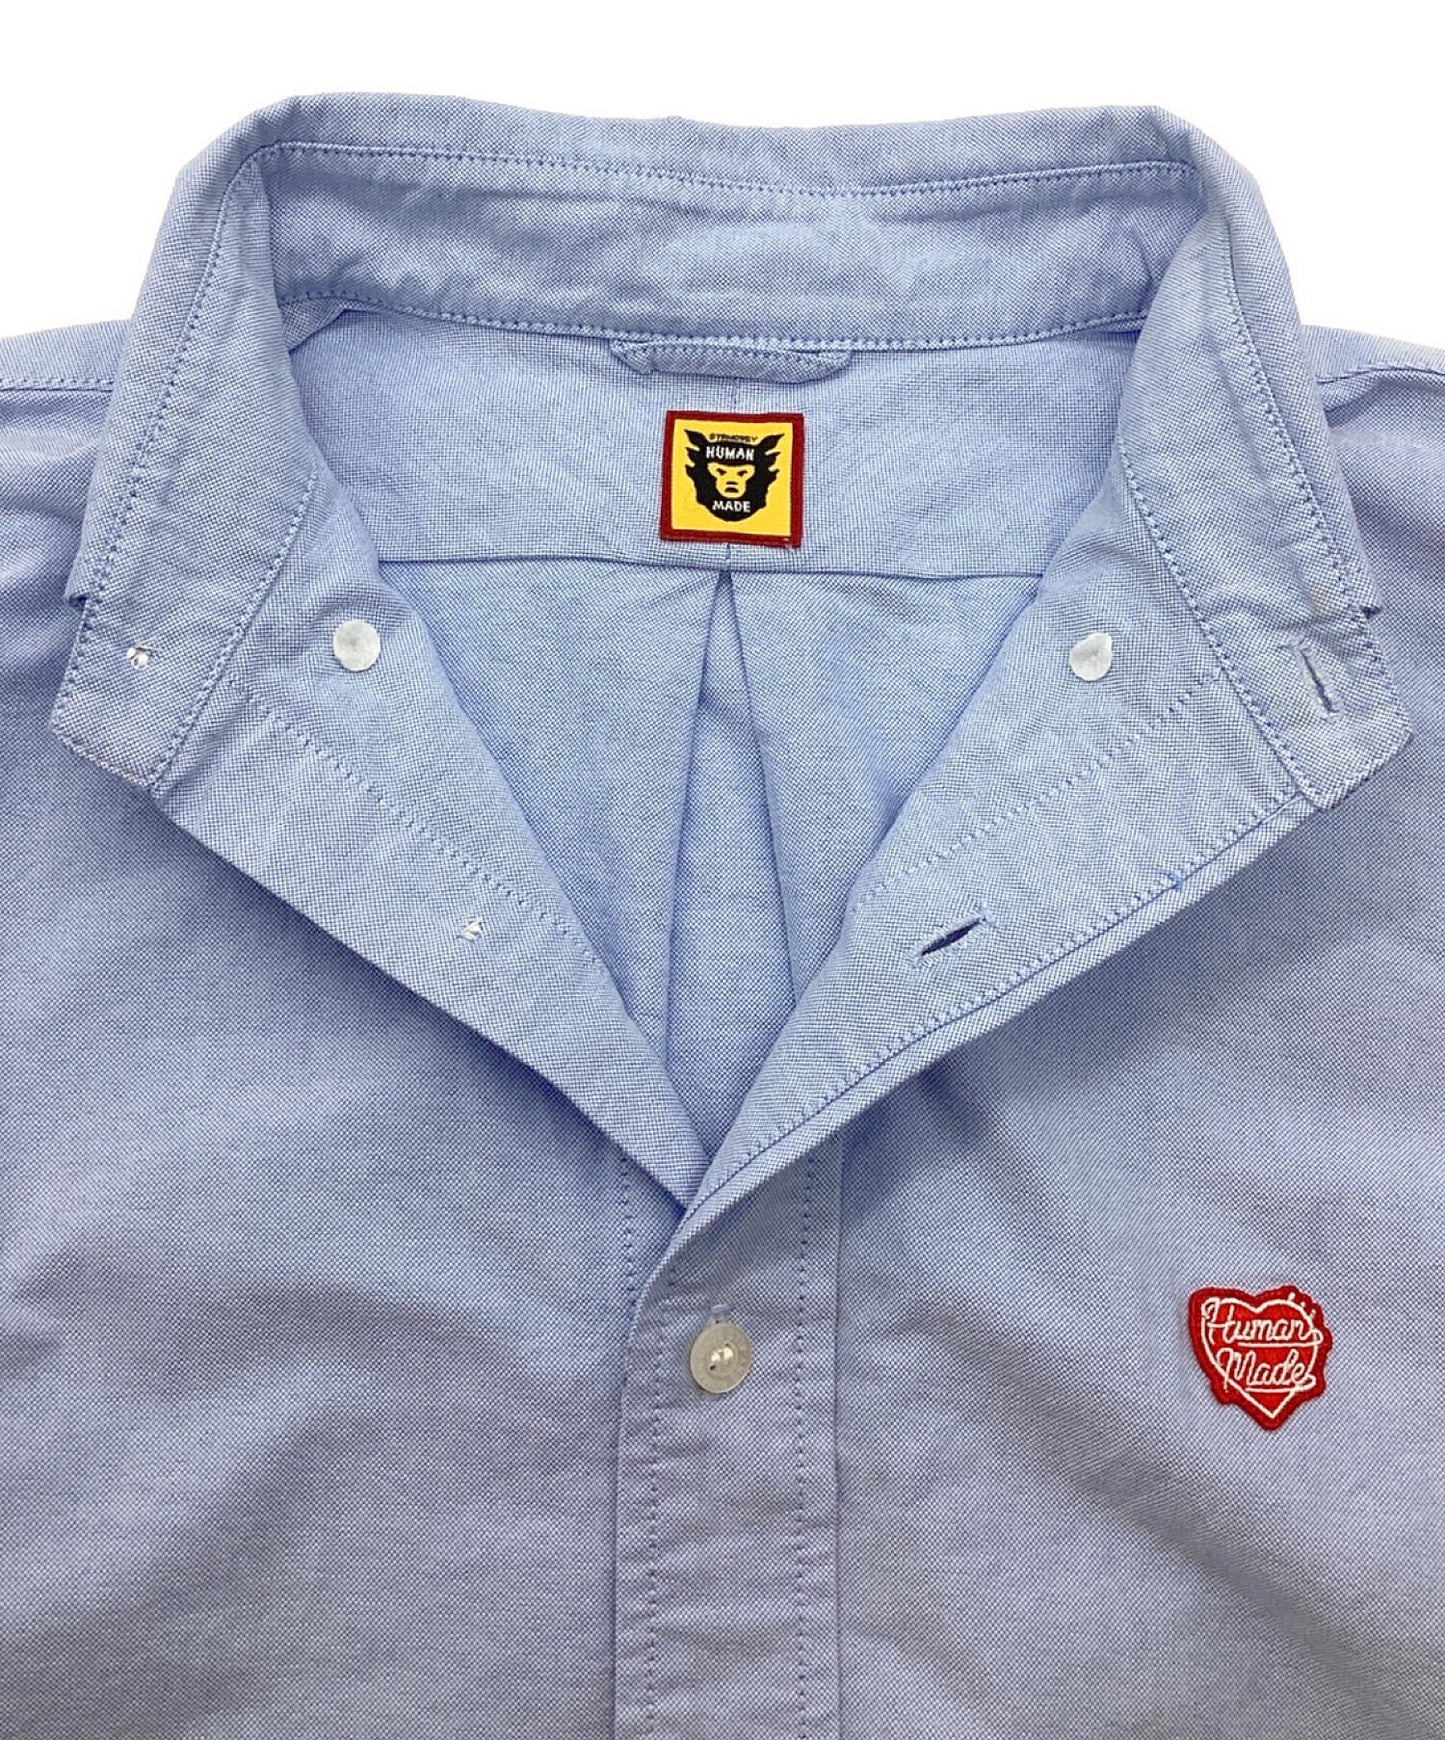 인간 만든 옥스포드 BD L/S 셔츠 옥스포드 버튼 다운 셔츠 한 포인트 로고 셔츠 hm26sh001